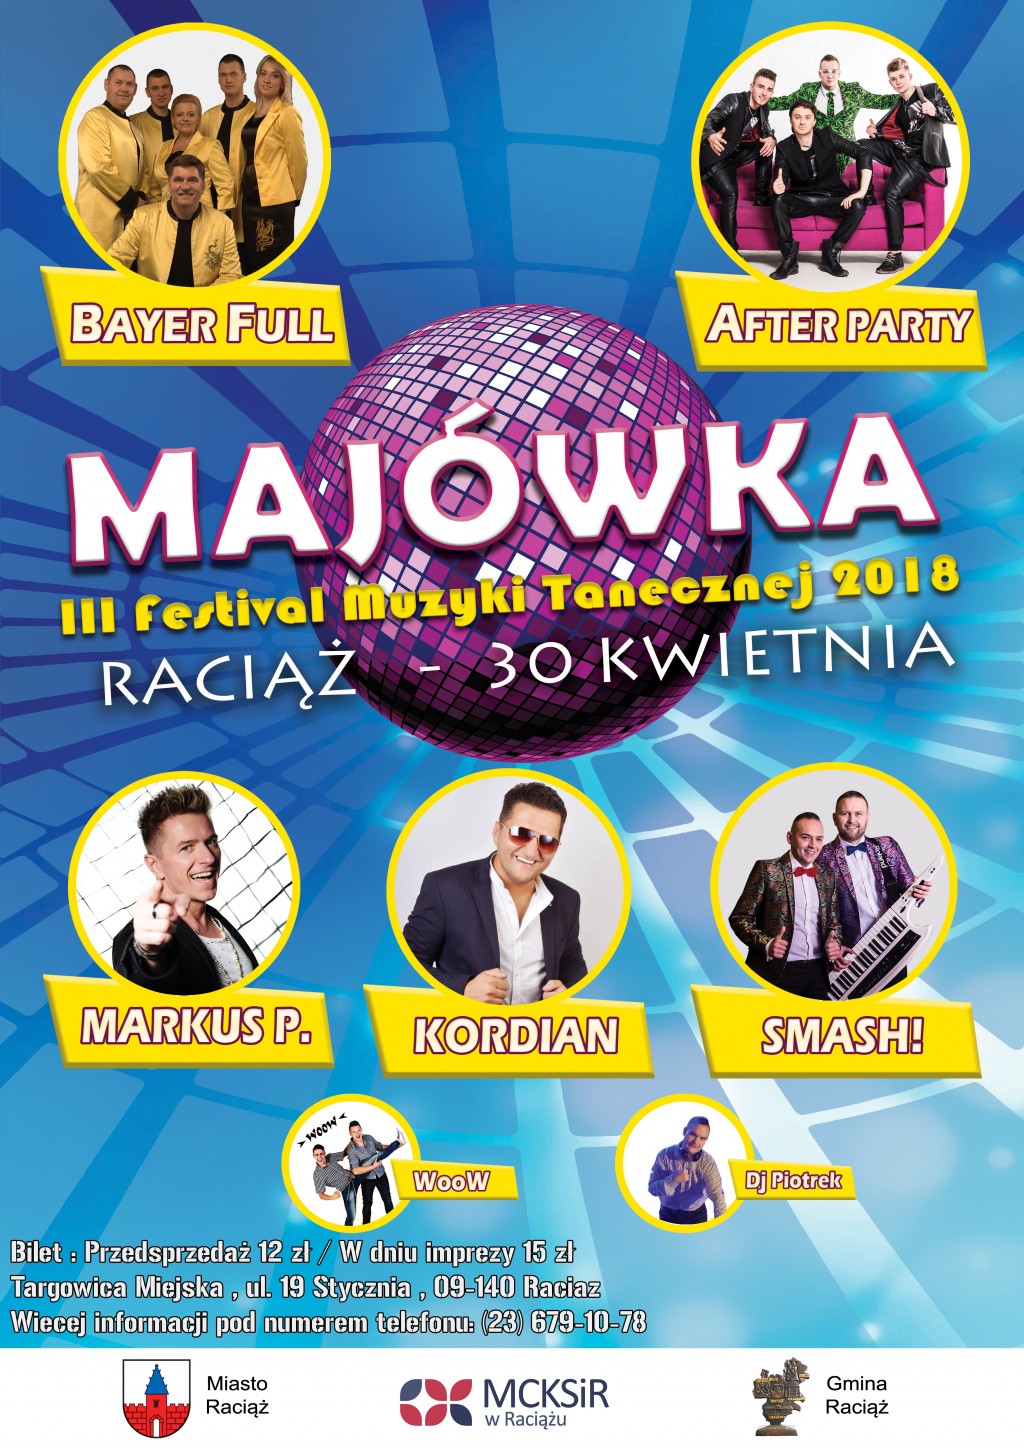 Majówka III Festiwal Muzyki Tanecznej - Raciąż 30.04.2018r.